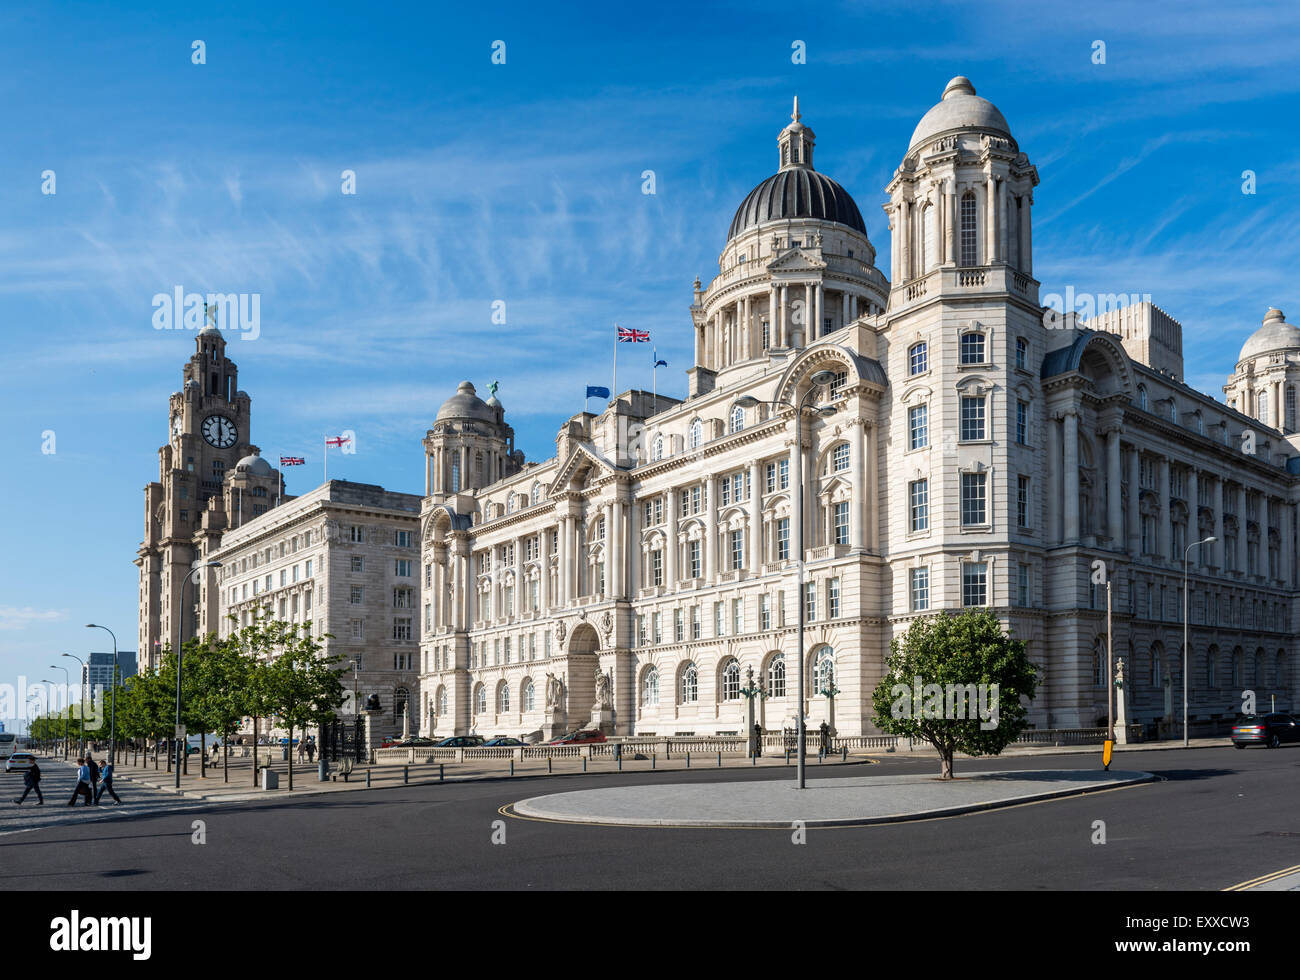 Le port de Liverpool Building, connu sous le nom de Dock Bureau Bureau, un bâtiment de Liverpool, Angleterre, Royaume-Uni sur le front Banque D'Images